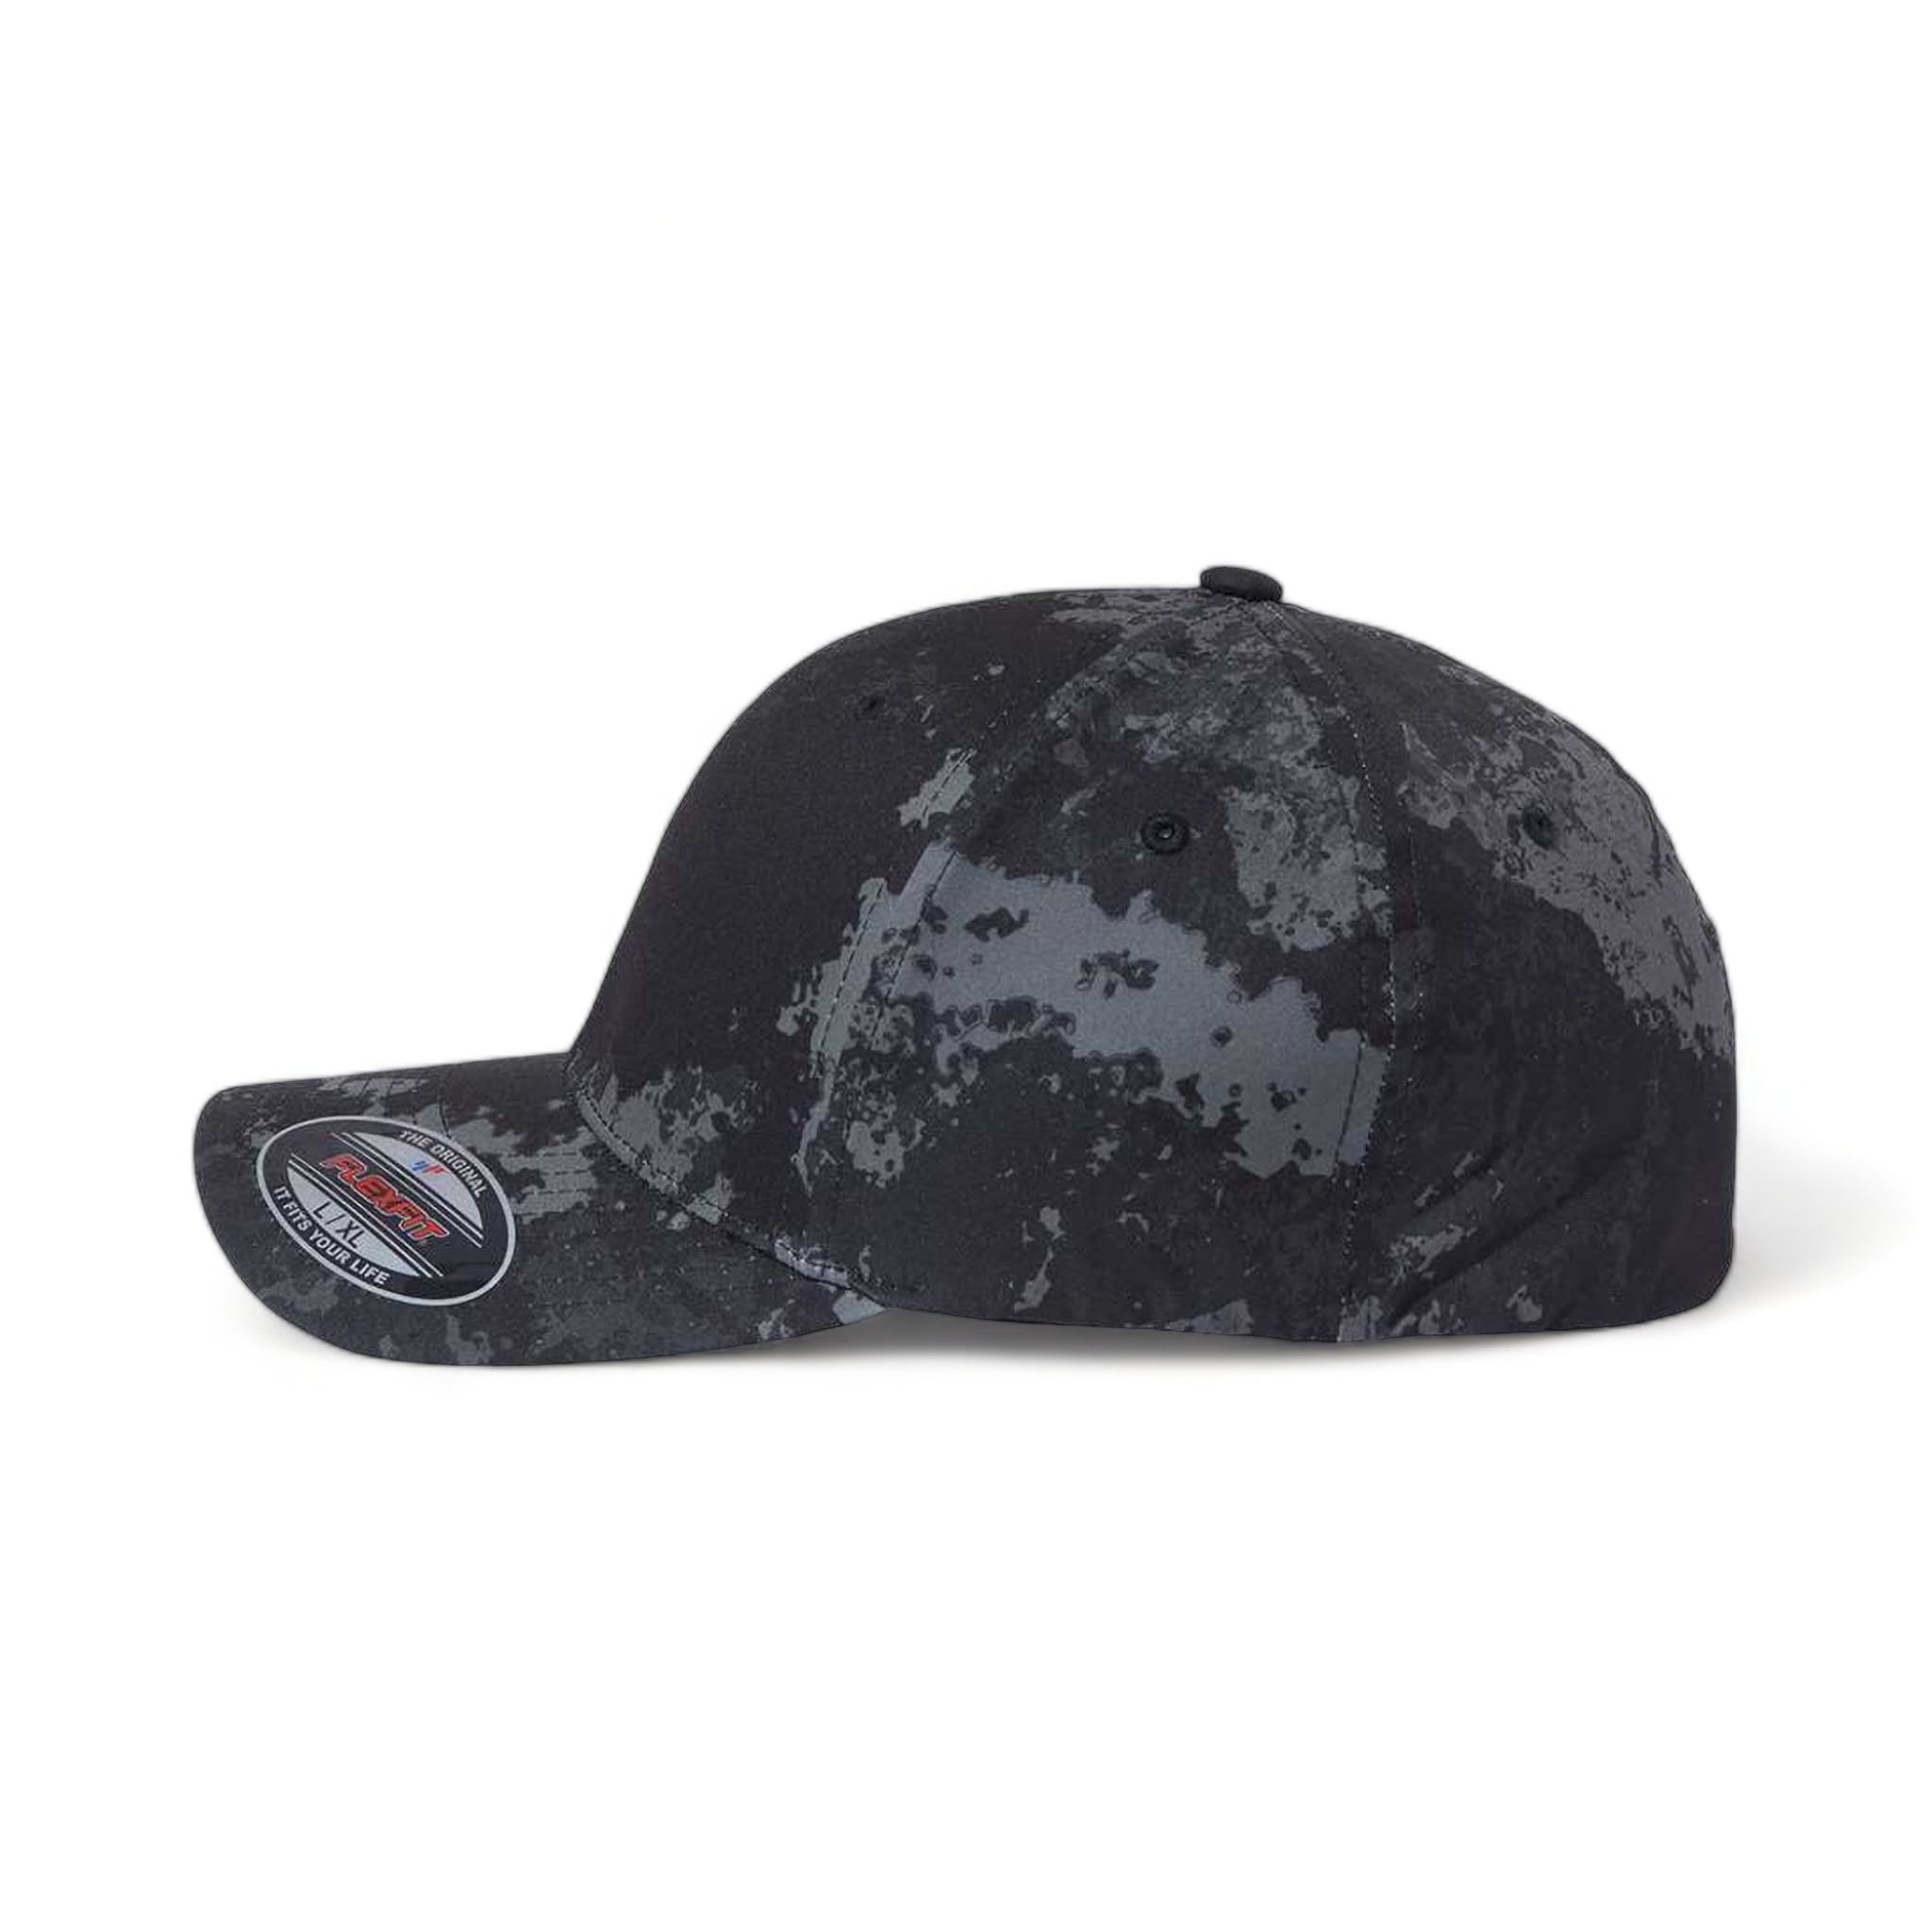 Side view of Flexfit 6277 custom hat in poseidon black